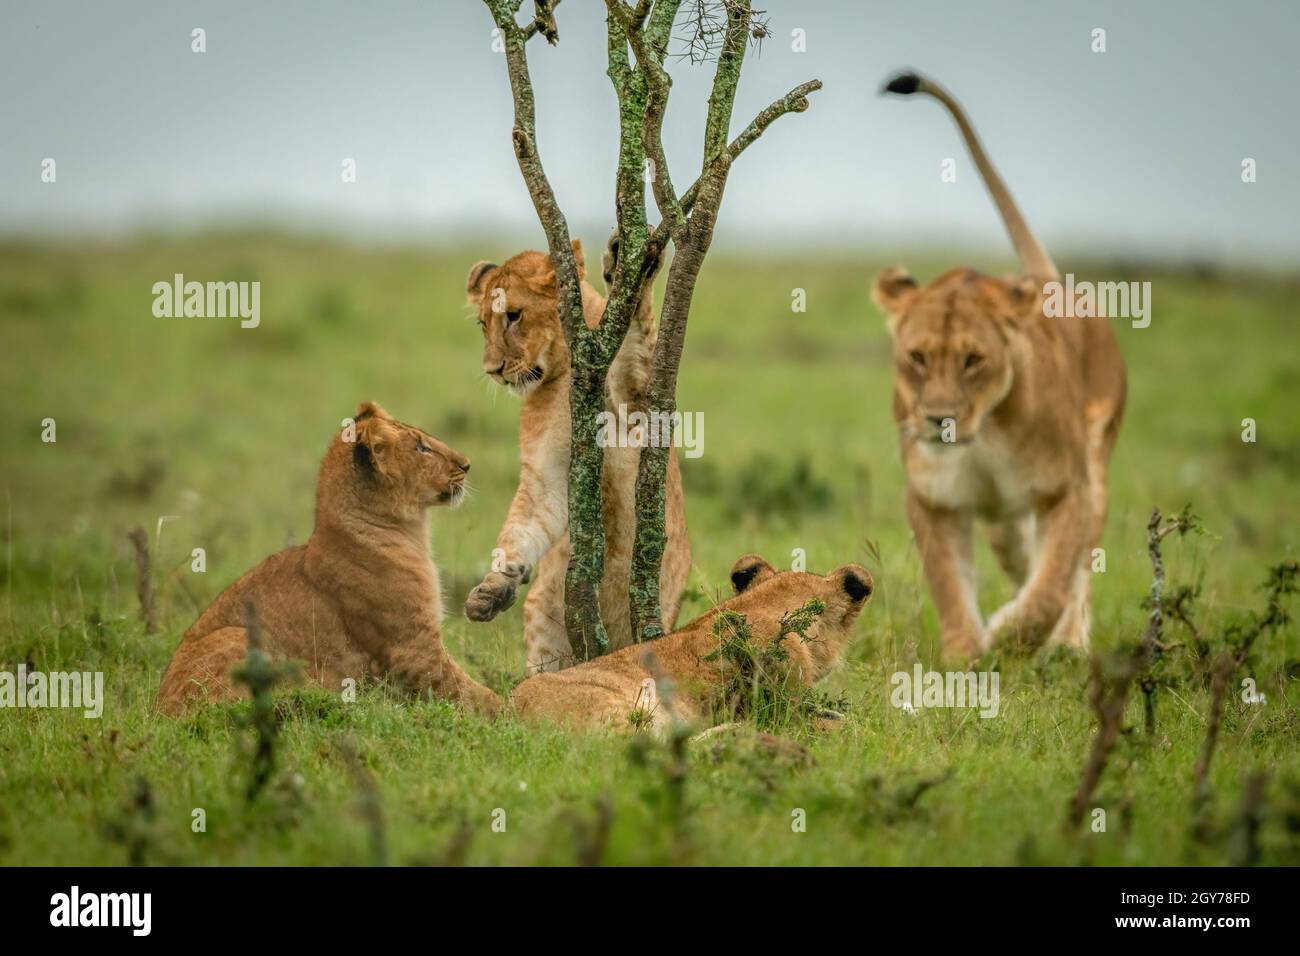 La leona camina hacia tres cachorros alrededor del arbusto Foto de stock